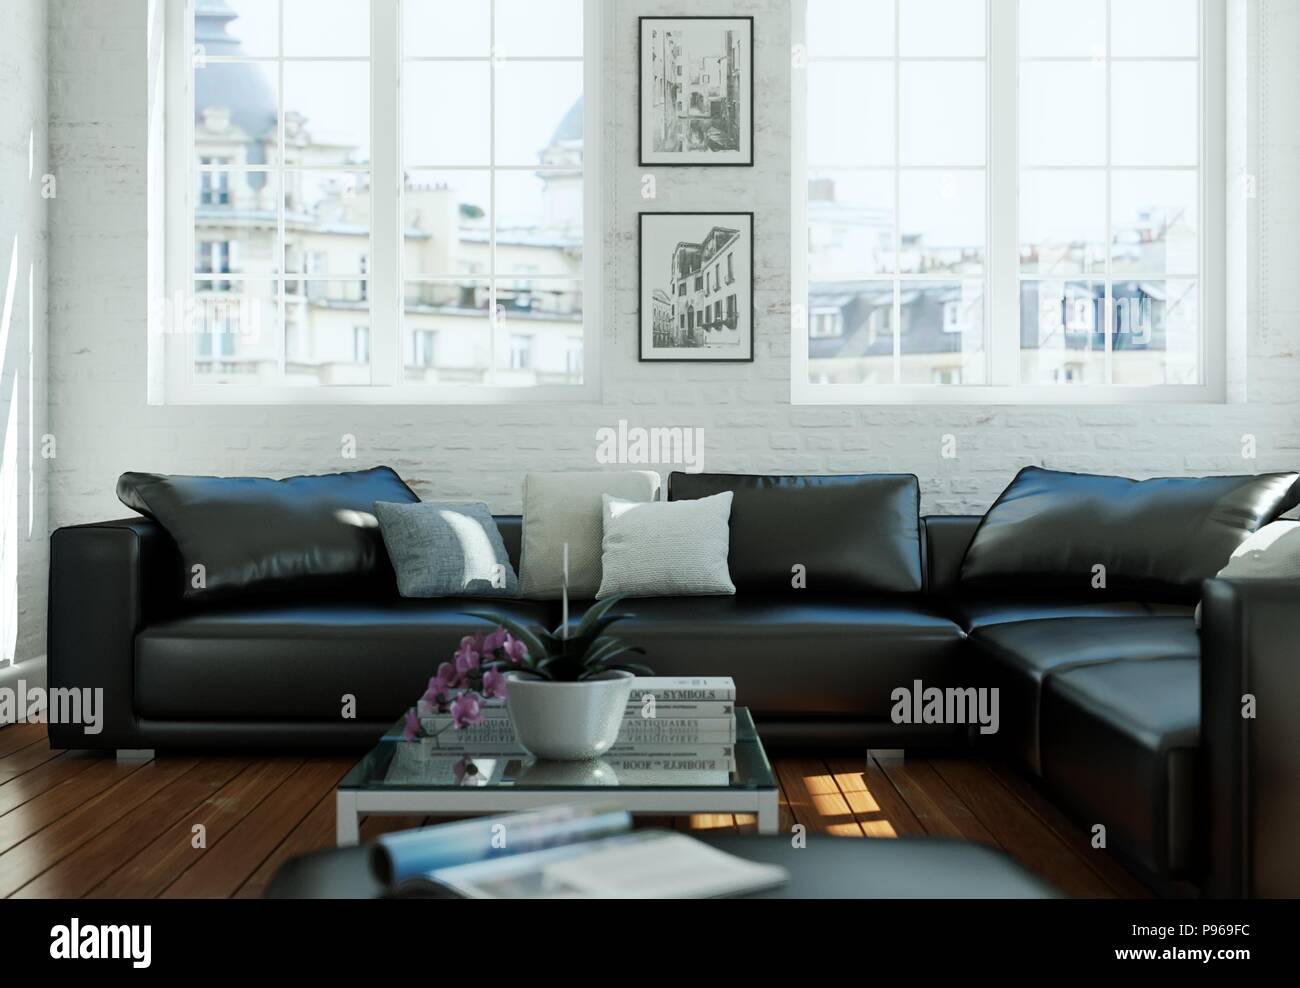 Moderne Gebaeude interior design Wohnzimmer mit schwarzer Ledercouch  Stockfotografie - Alamy